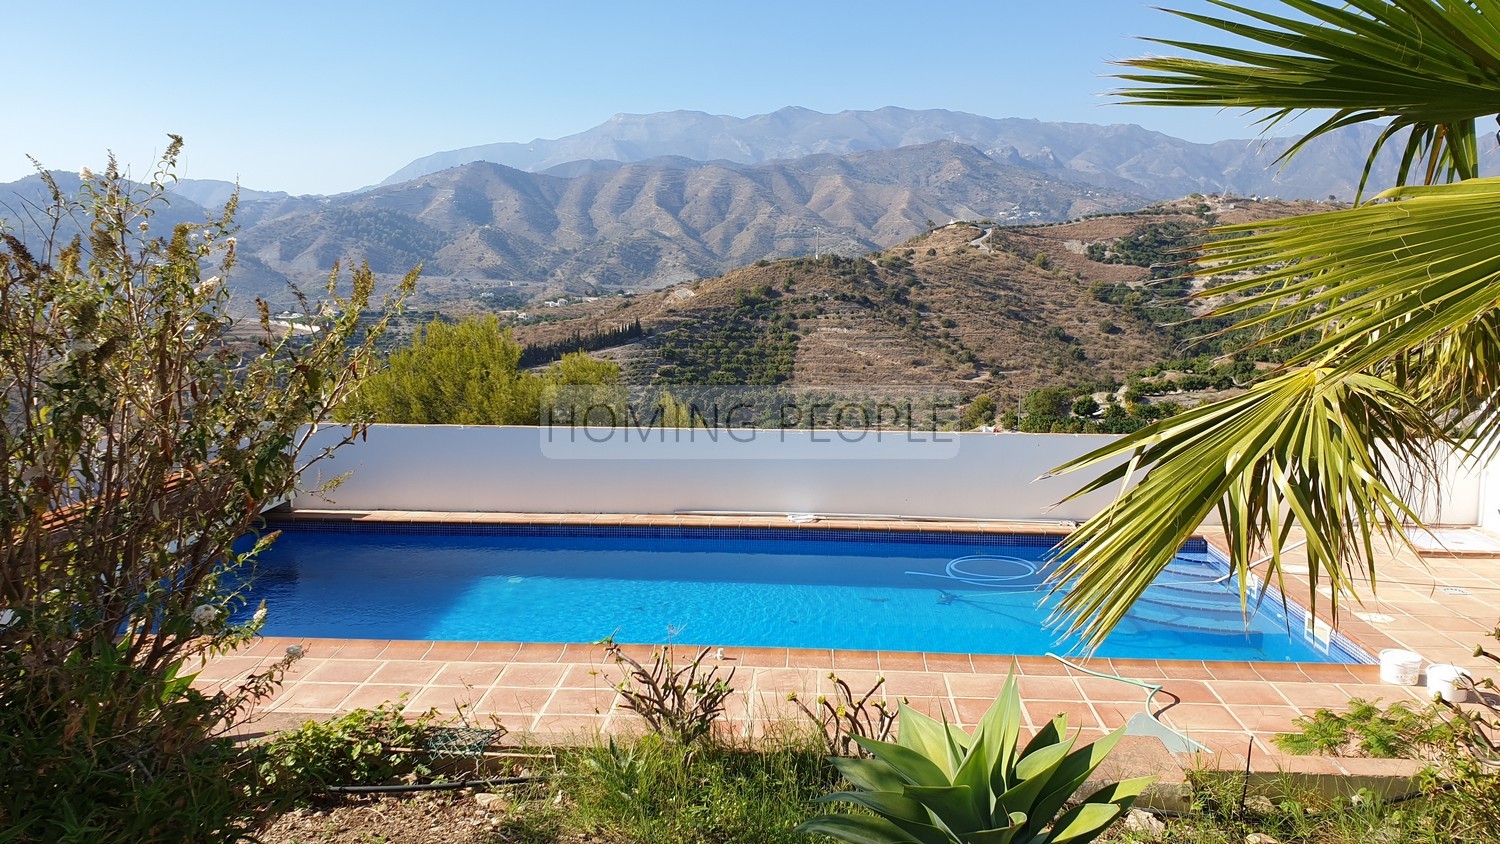 Villa de style andalou avec charme: Verdure, terrasses, piscine et de merveilleuses vues sur la baie...